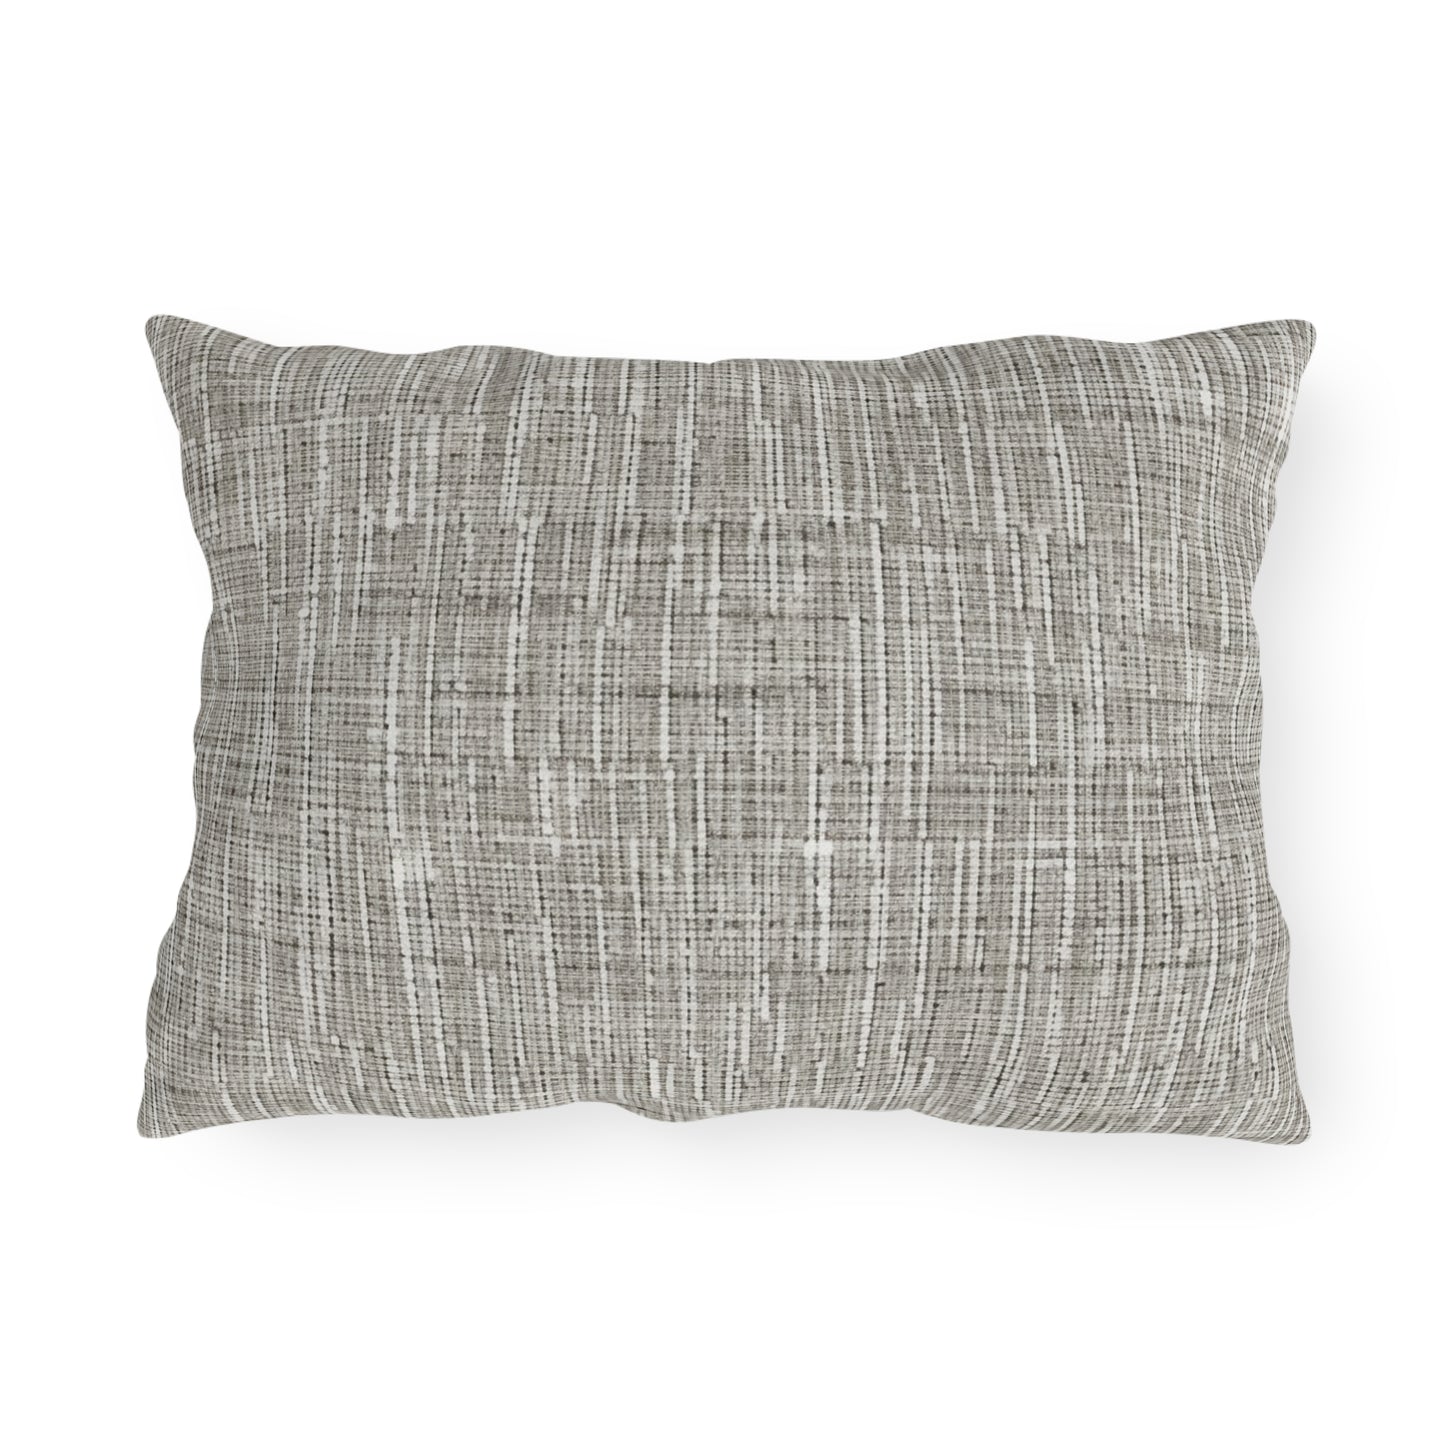 Silver Grey: Denim-Inspired, Contemporary Fabric Design - Outdoor Pillows